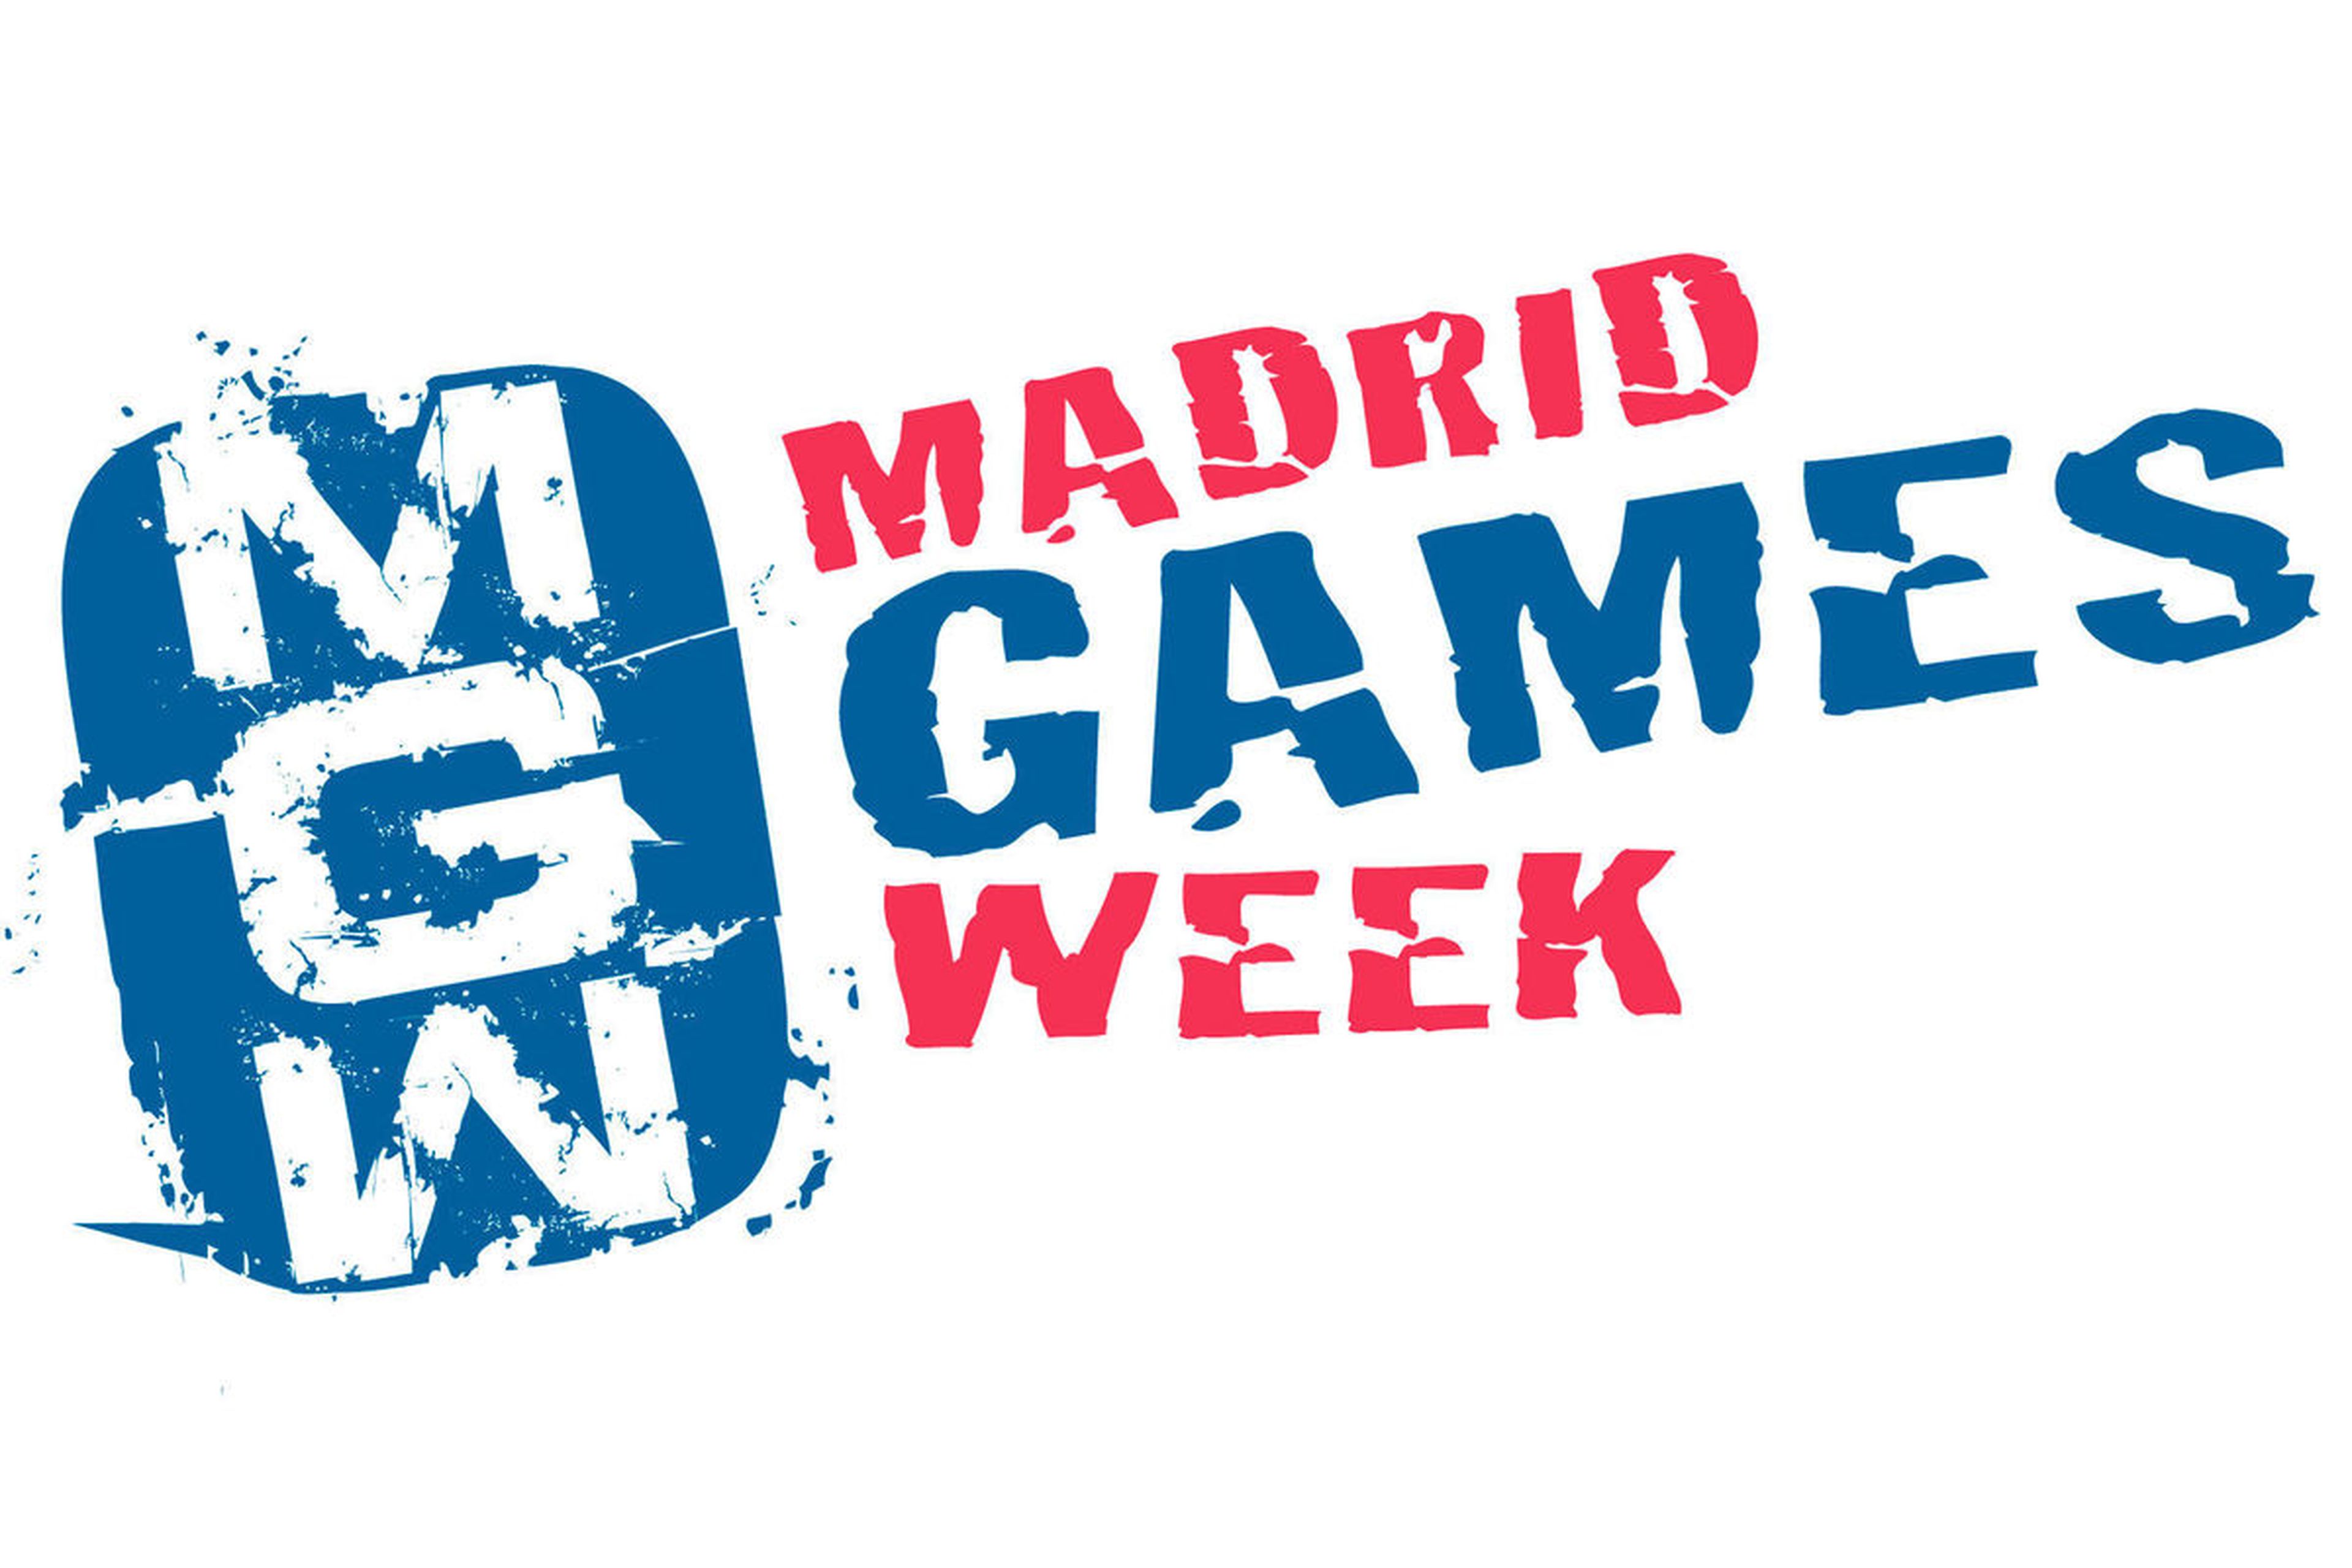 Madrid Games Week 2015 confirma la presencia de las grandes compañías del sector